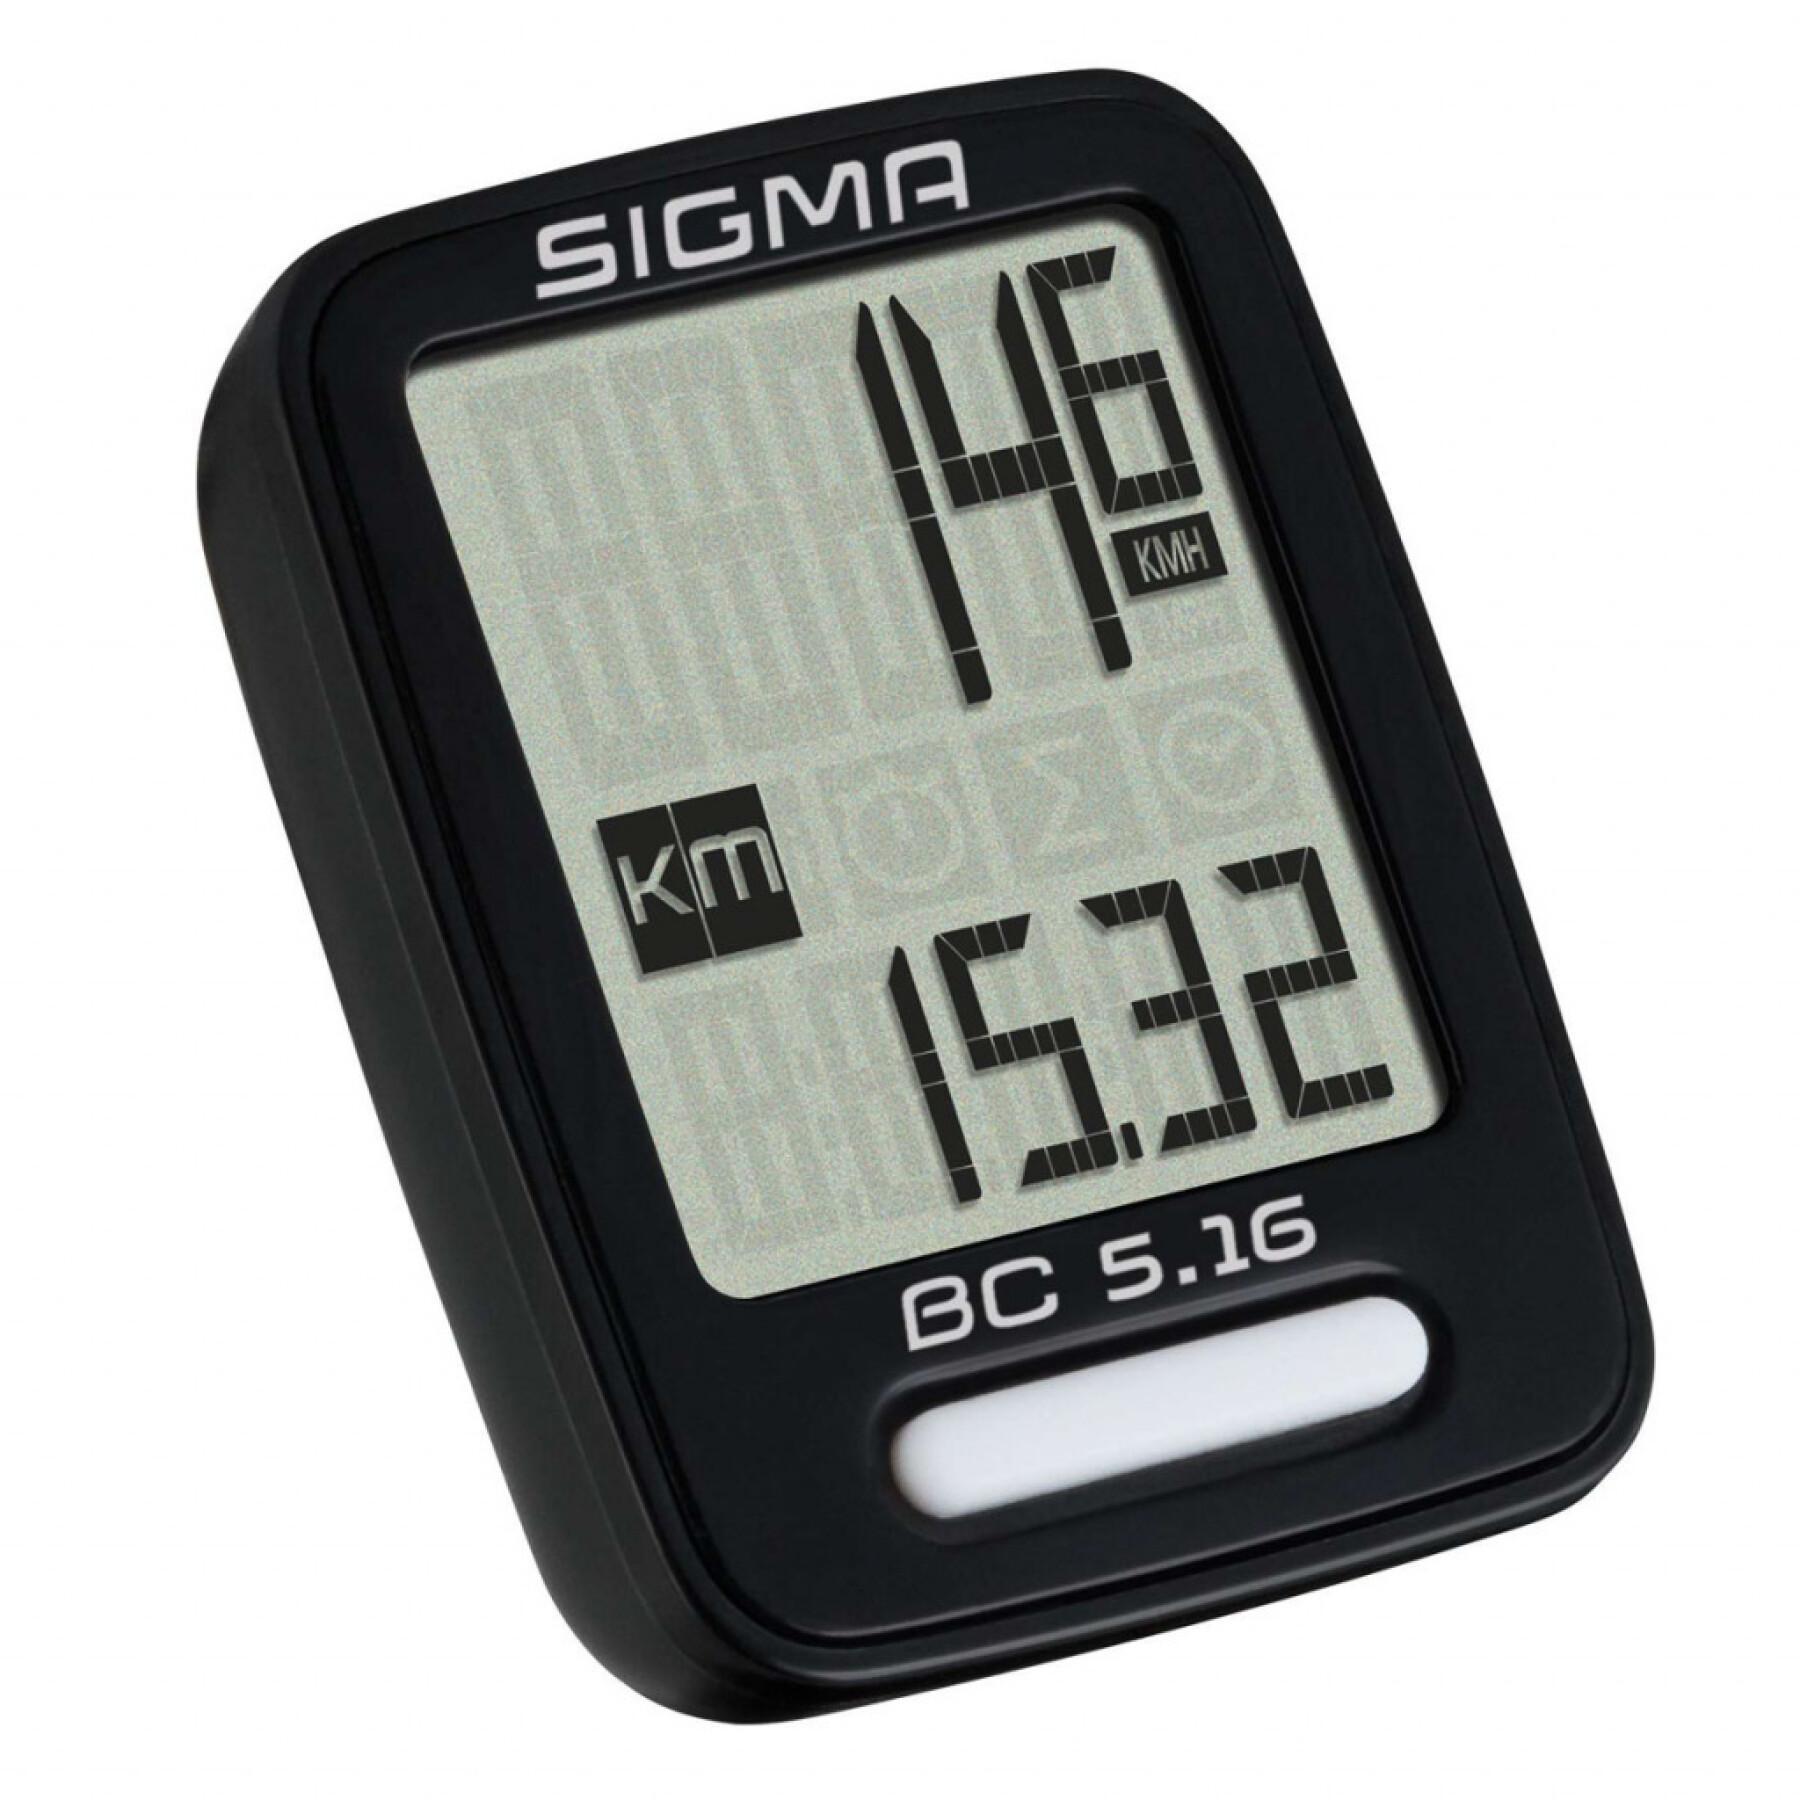 Cuentakilómetros Sigma BC 5.16